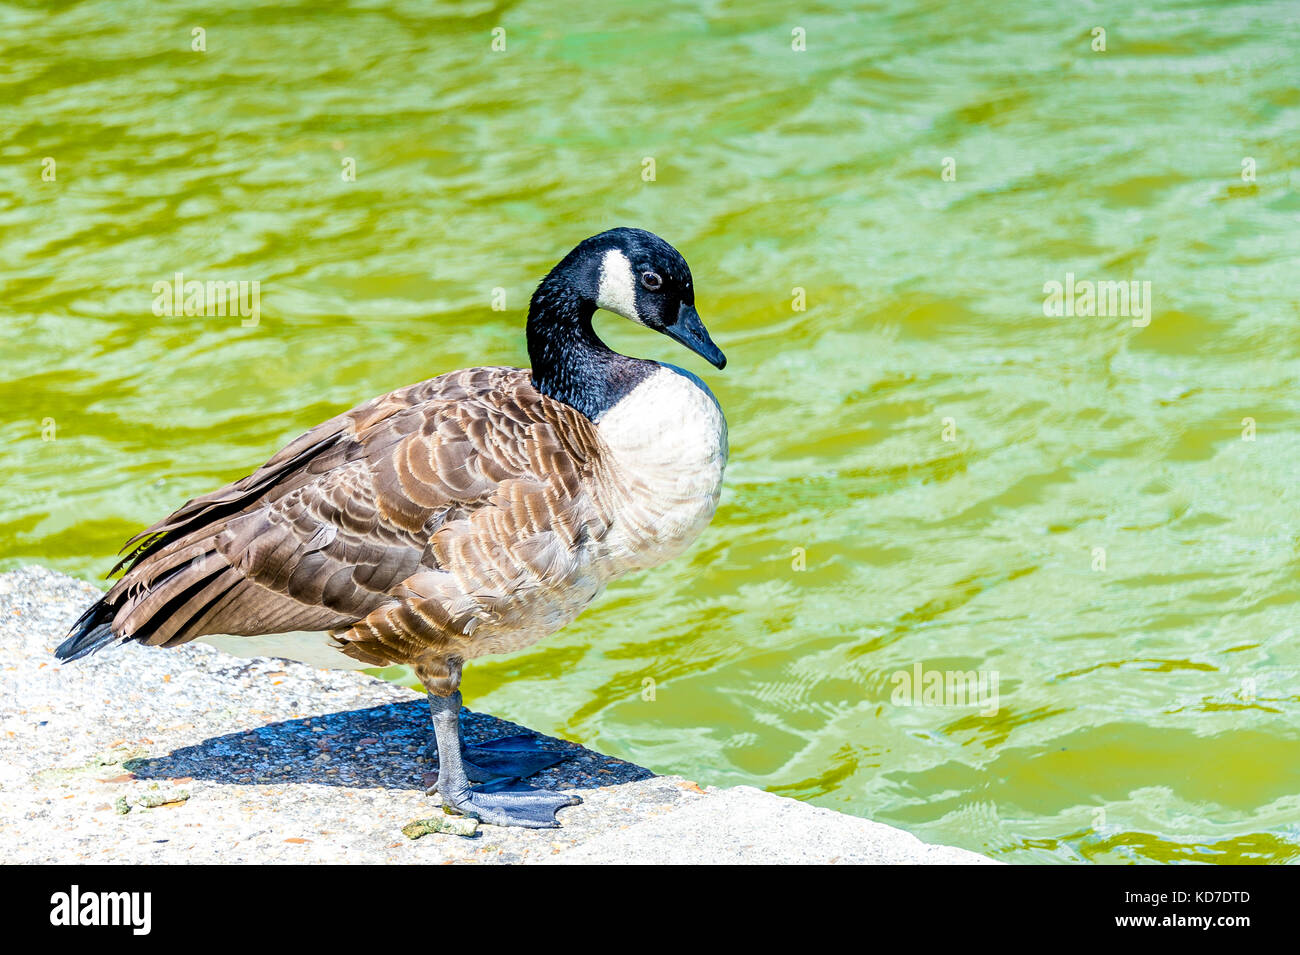 A Canada Goose in Parc Floral de Paris located within the Bois de Vincennes  in Paris, France Stock Photo - Alamy